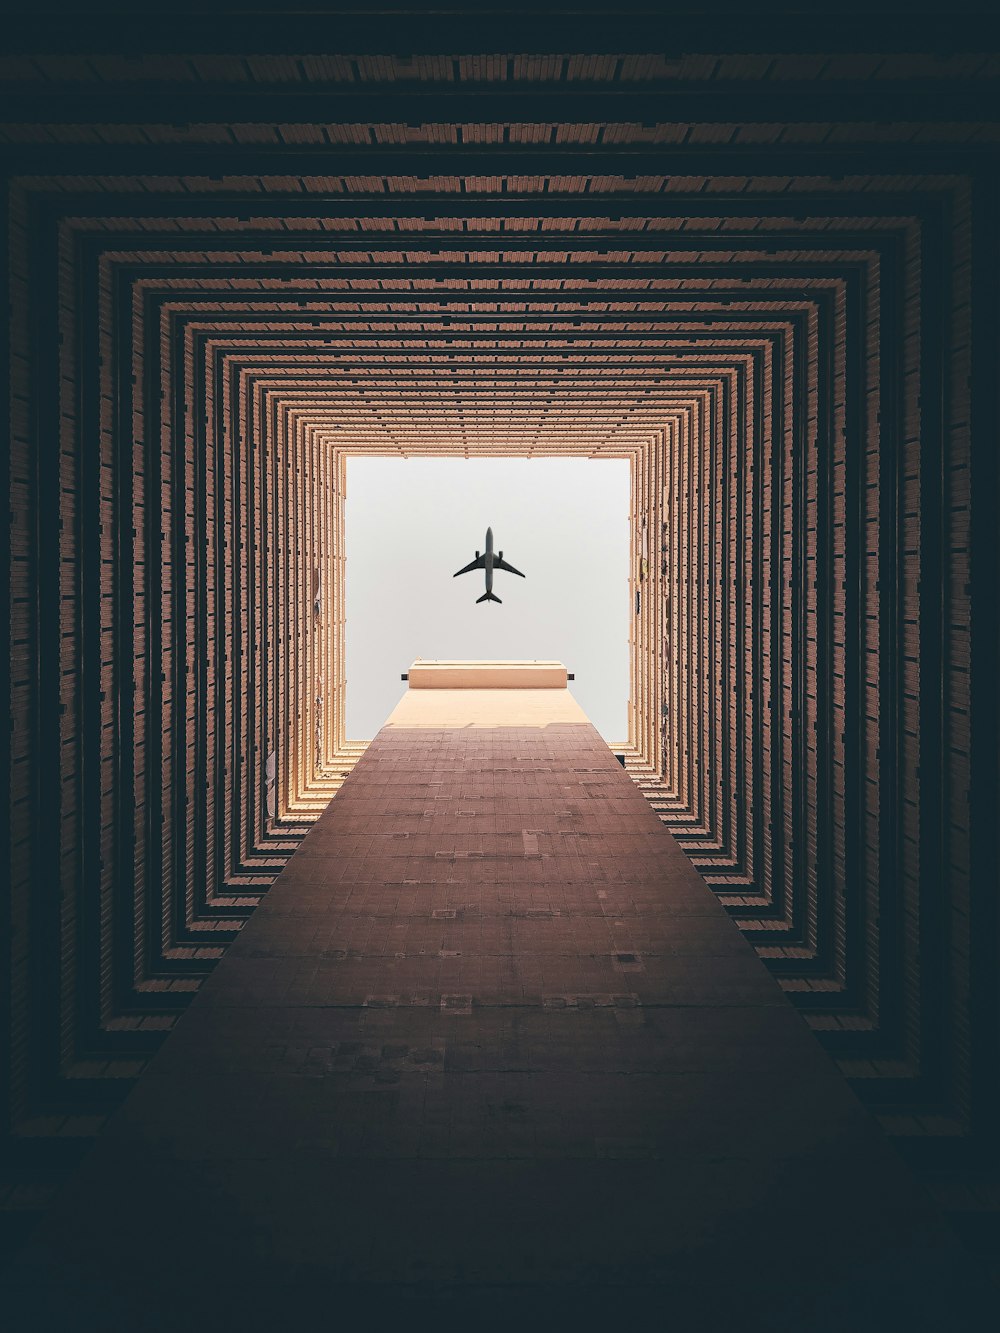 Silueta de avión